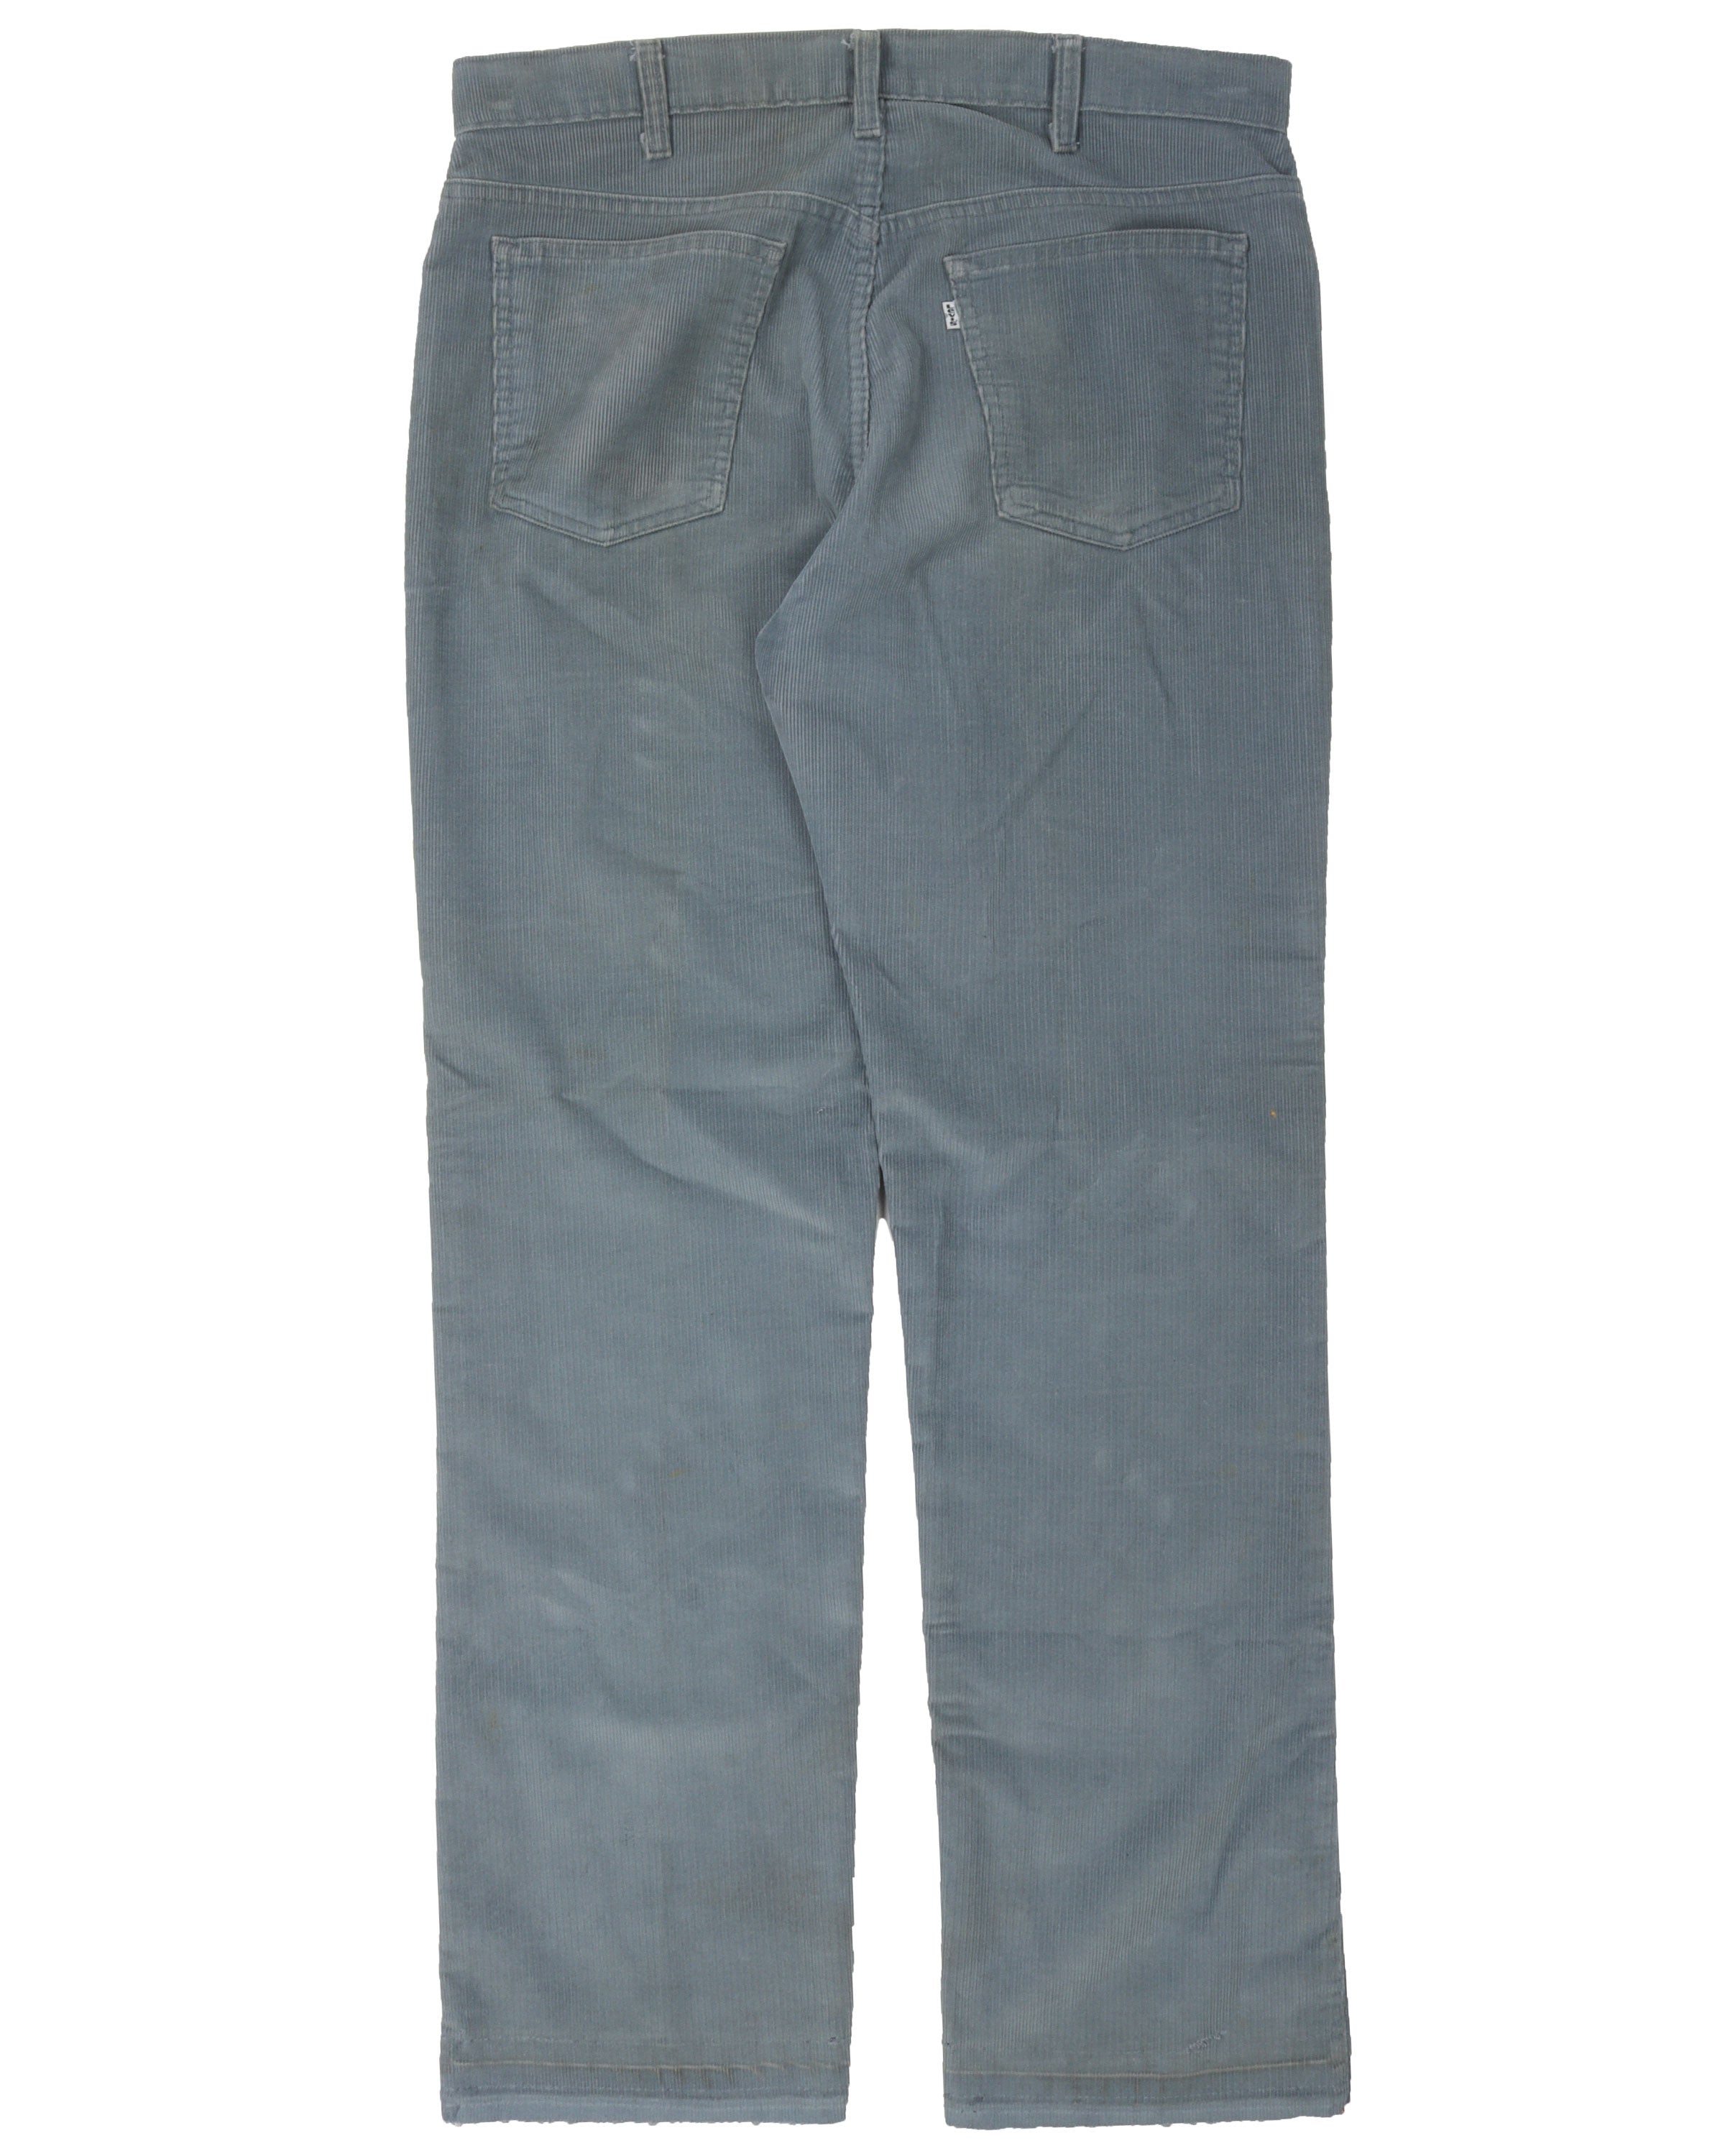 Levi's Blue Corduroy Pants